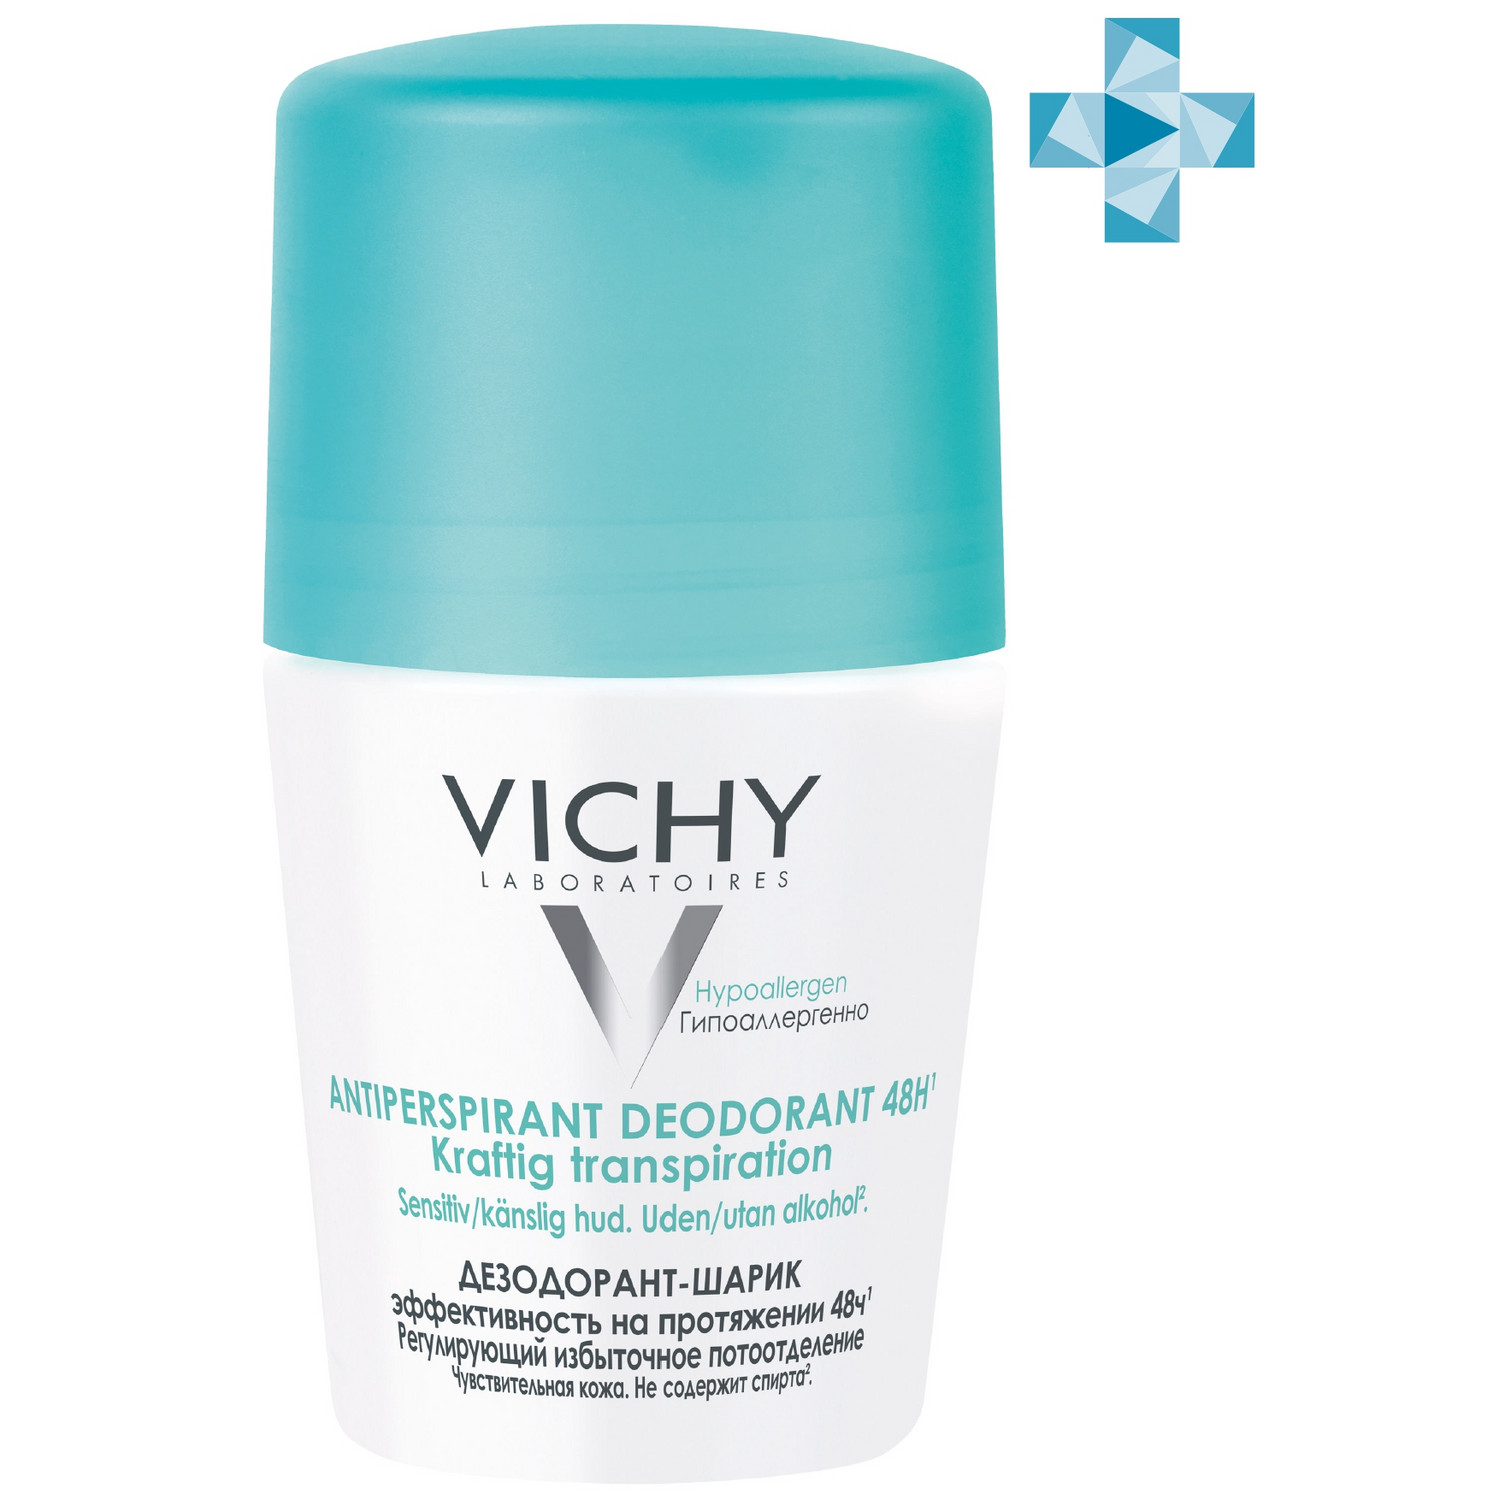 Vichy Шариковый дезодорант, регулирующий избыточное потоотде